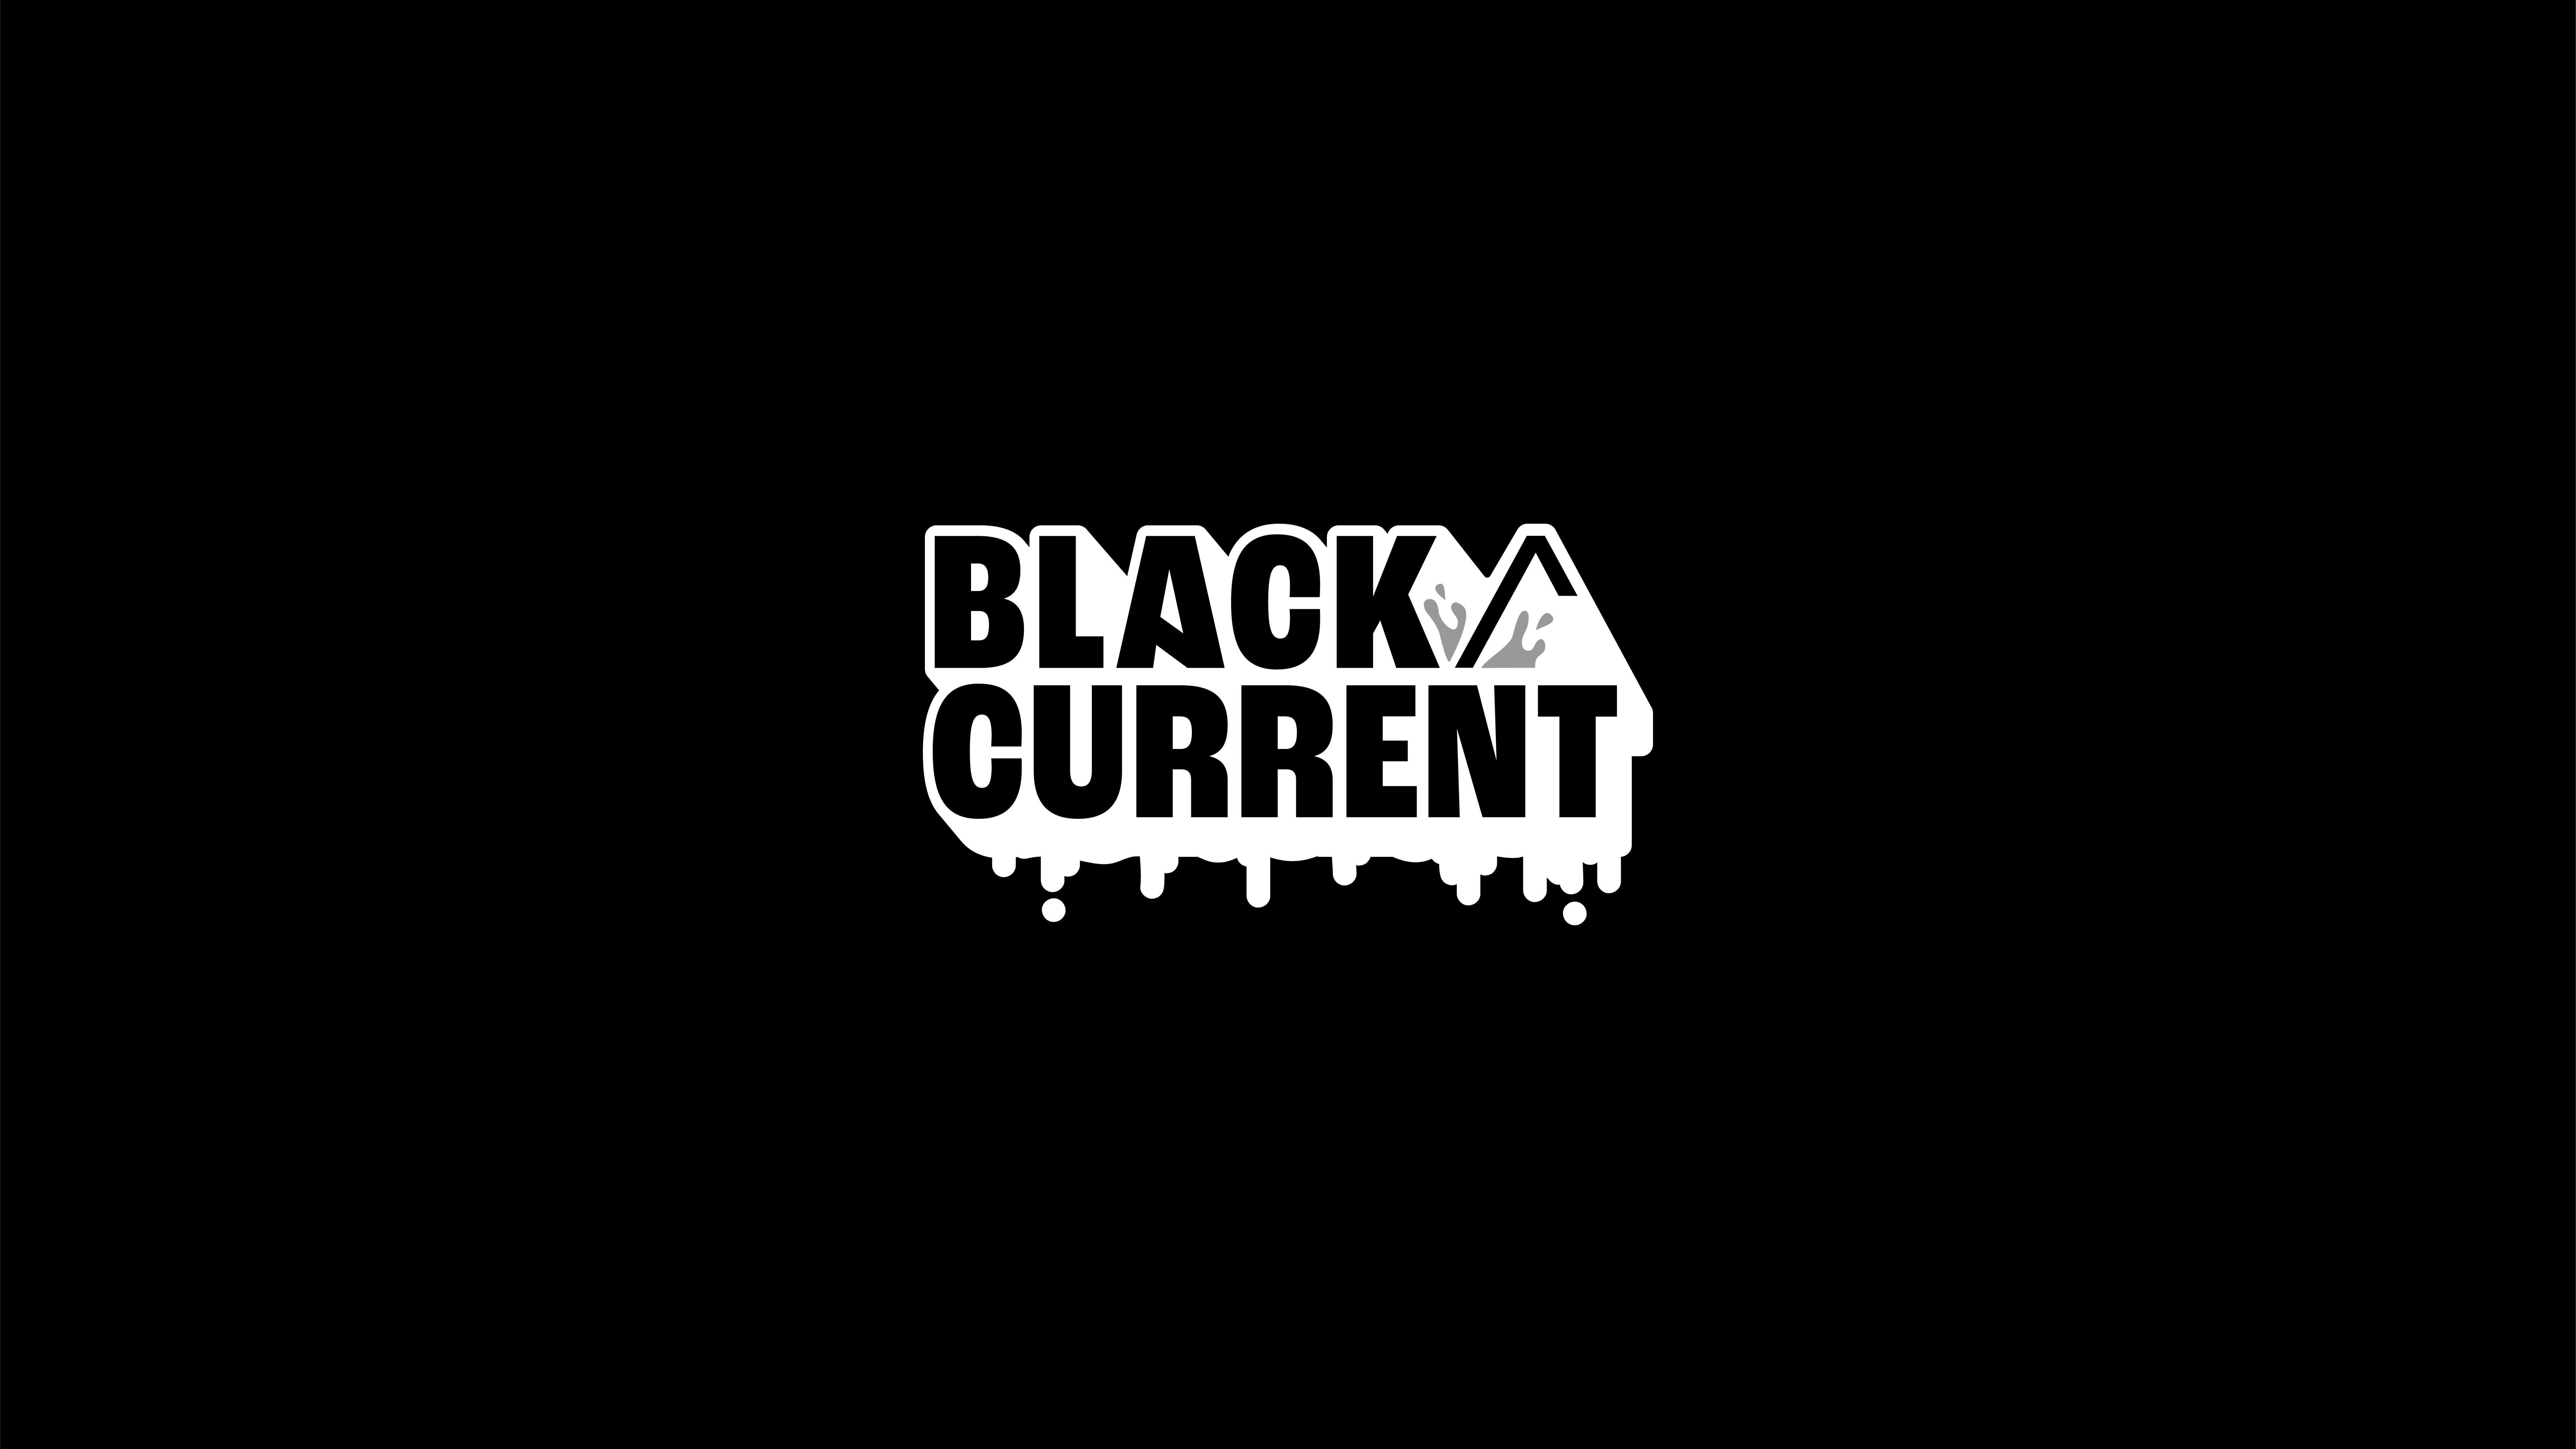 BlackCurrent-Artwork-02